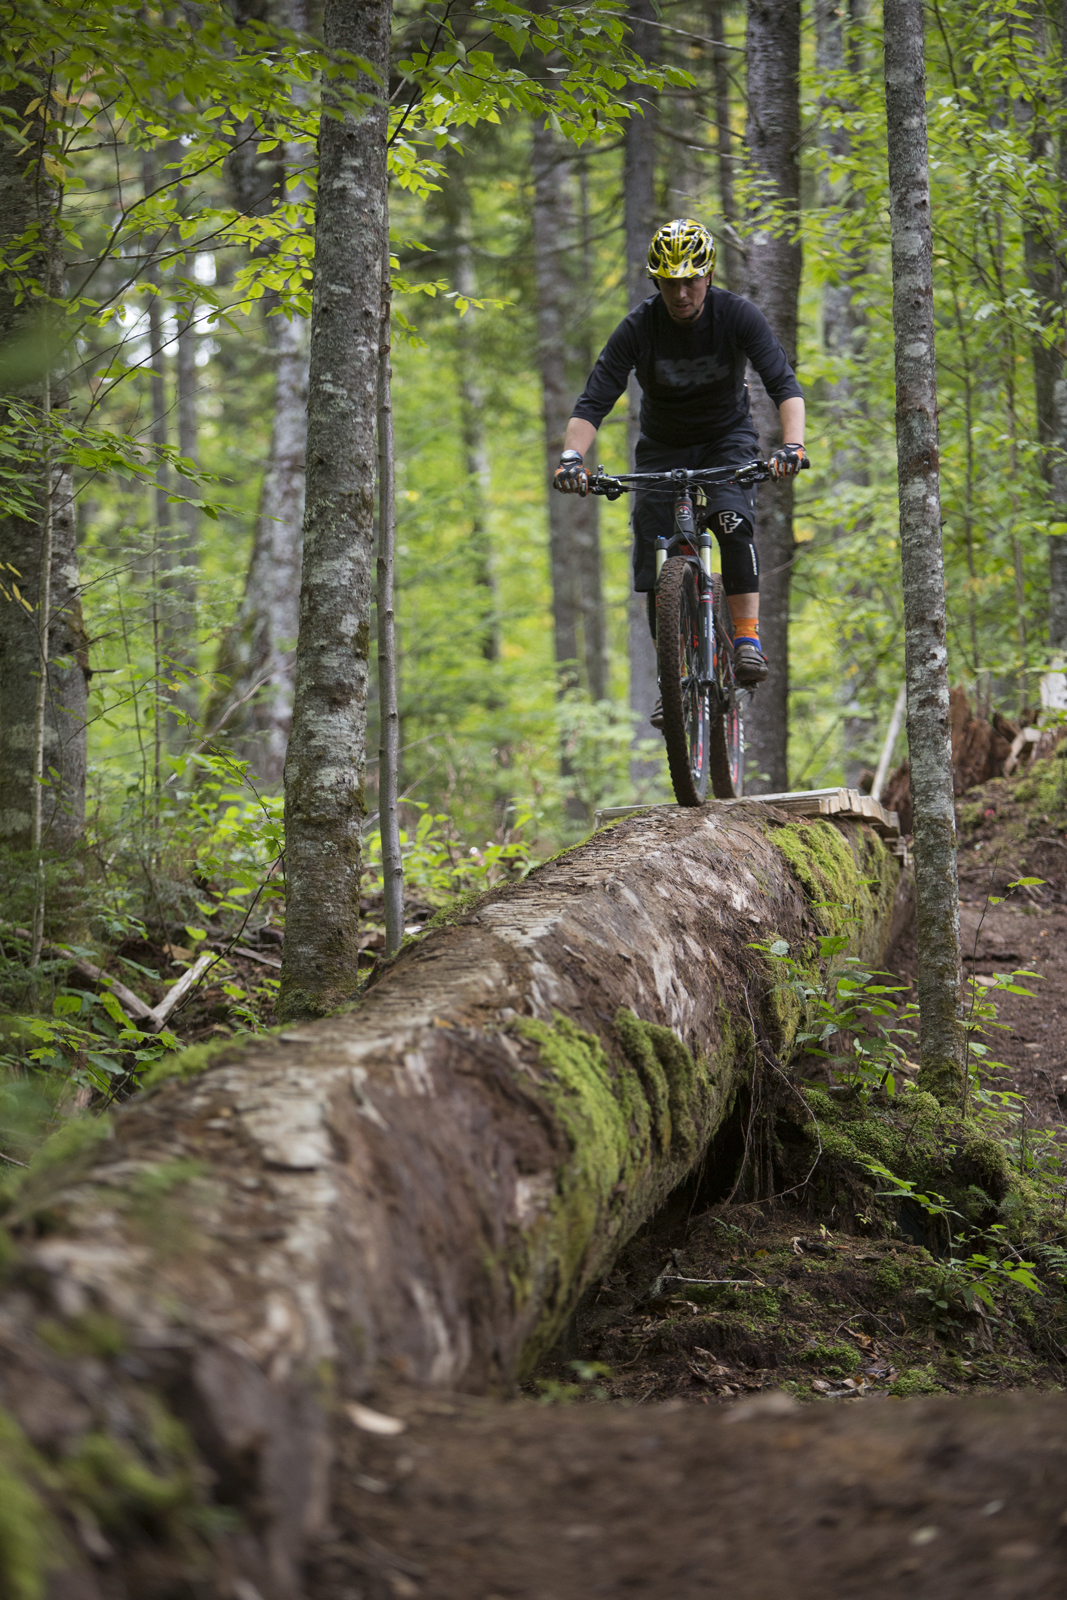 Un cycliste s'adonnant à un sport de plein air, soit le vélo de montagne, sur un tronc d'arbre, l'un des passages du sentier Boréal, entouré par la nature.